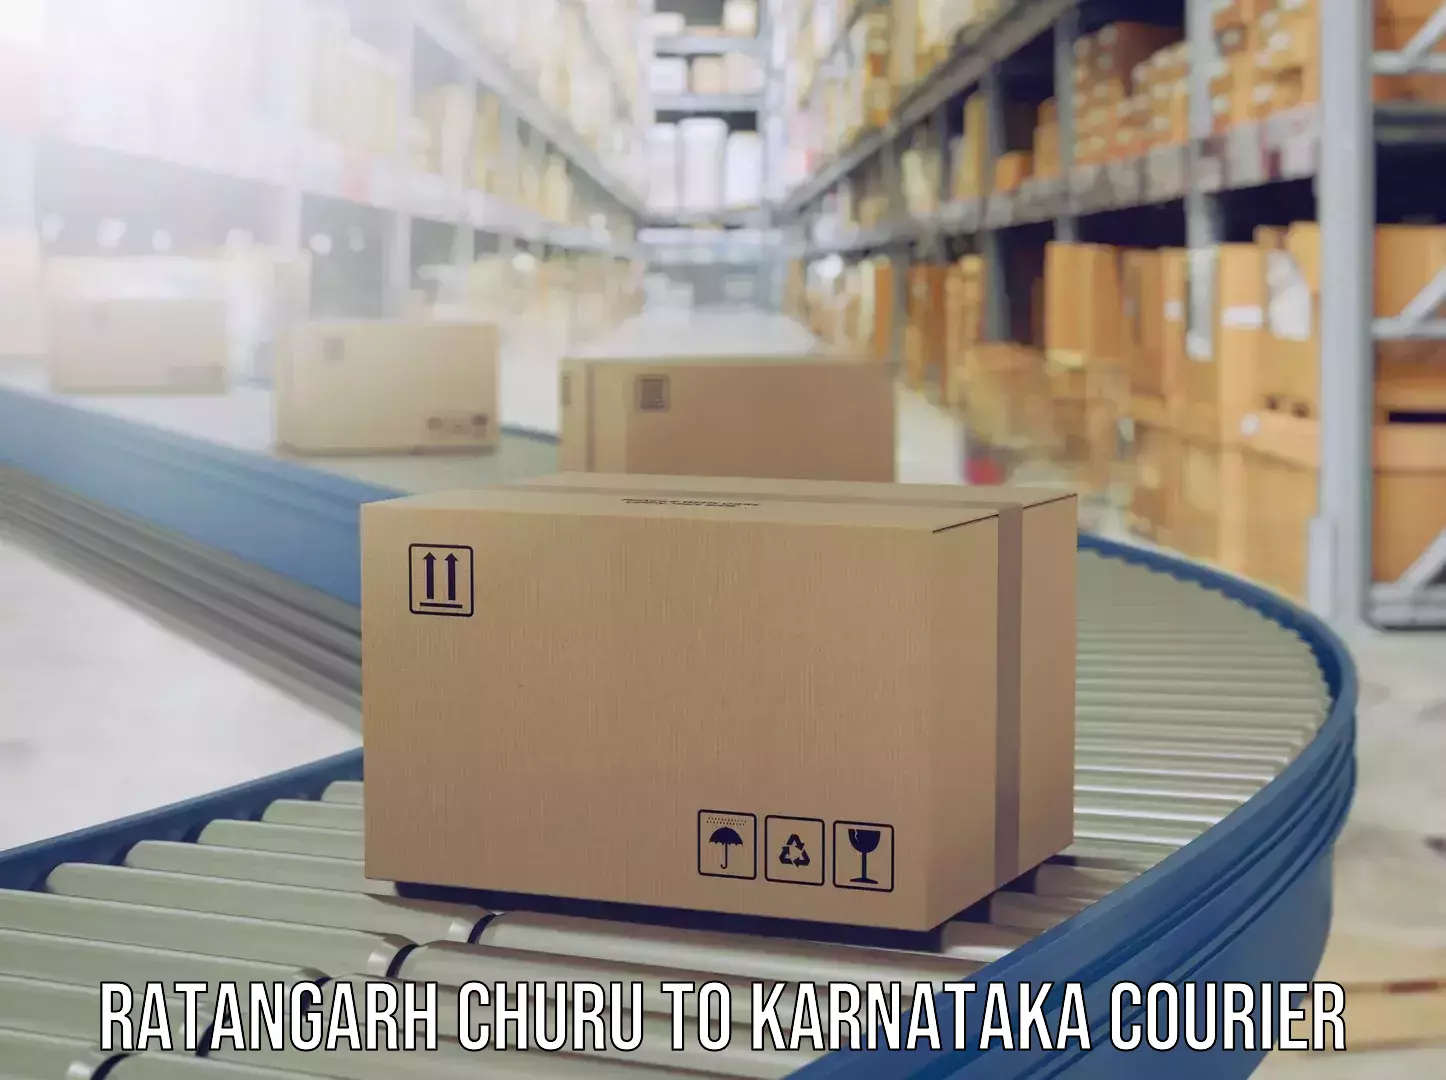 Luggage delivery providers Ratangarh Churu to Yaragatti